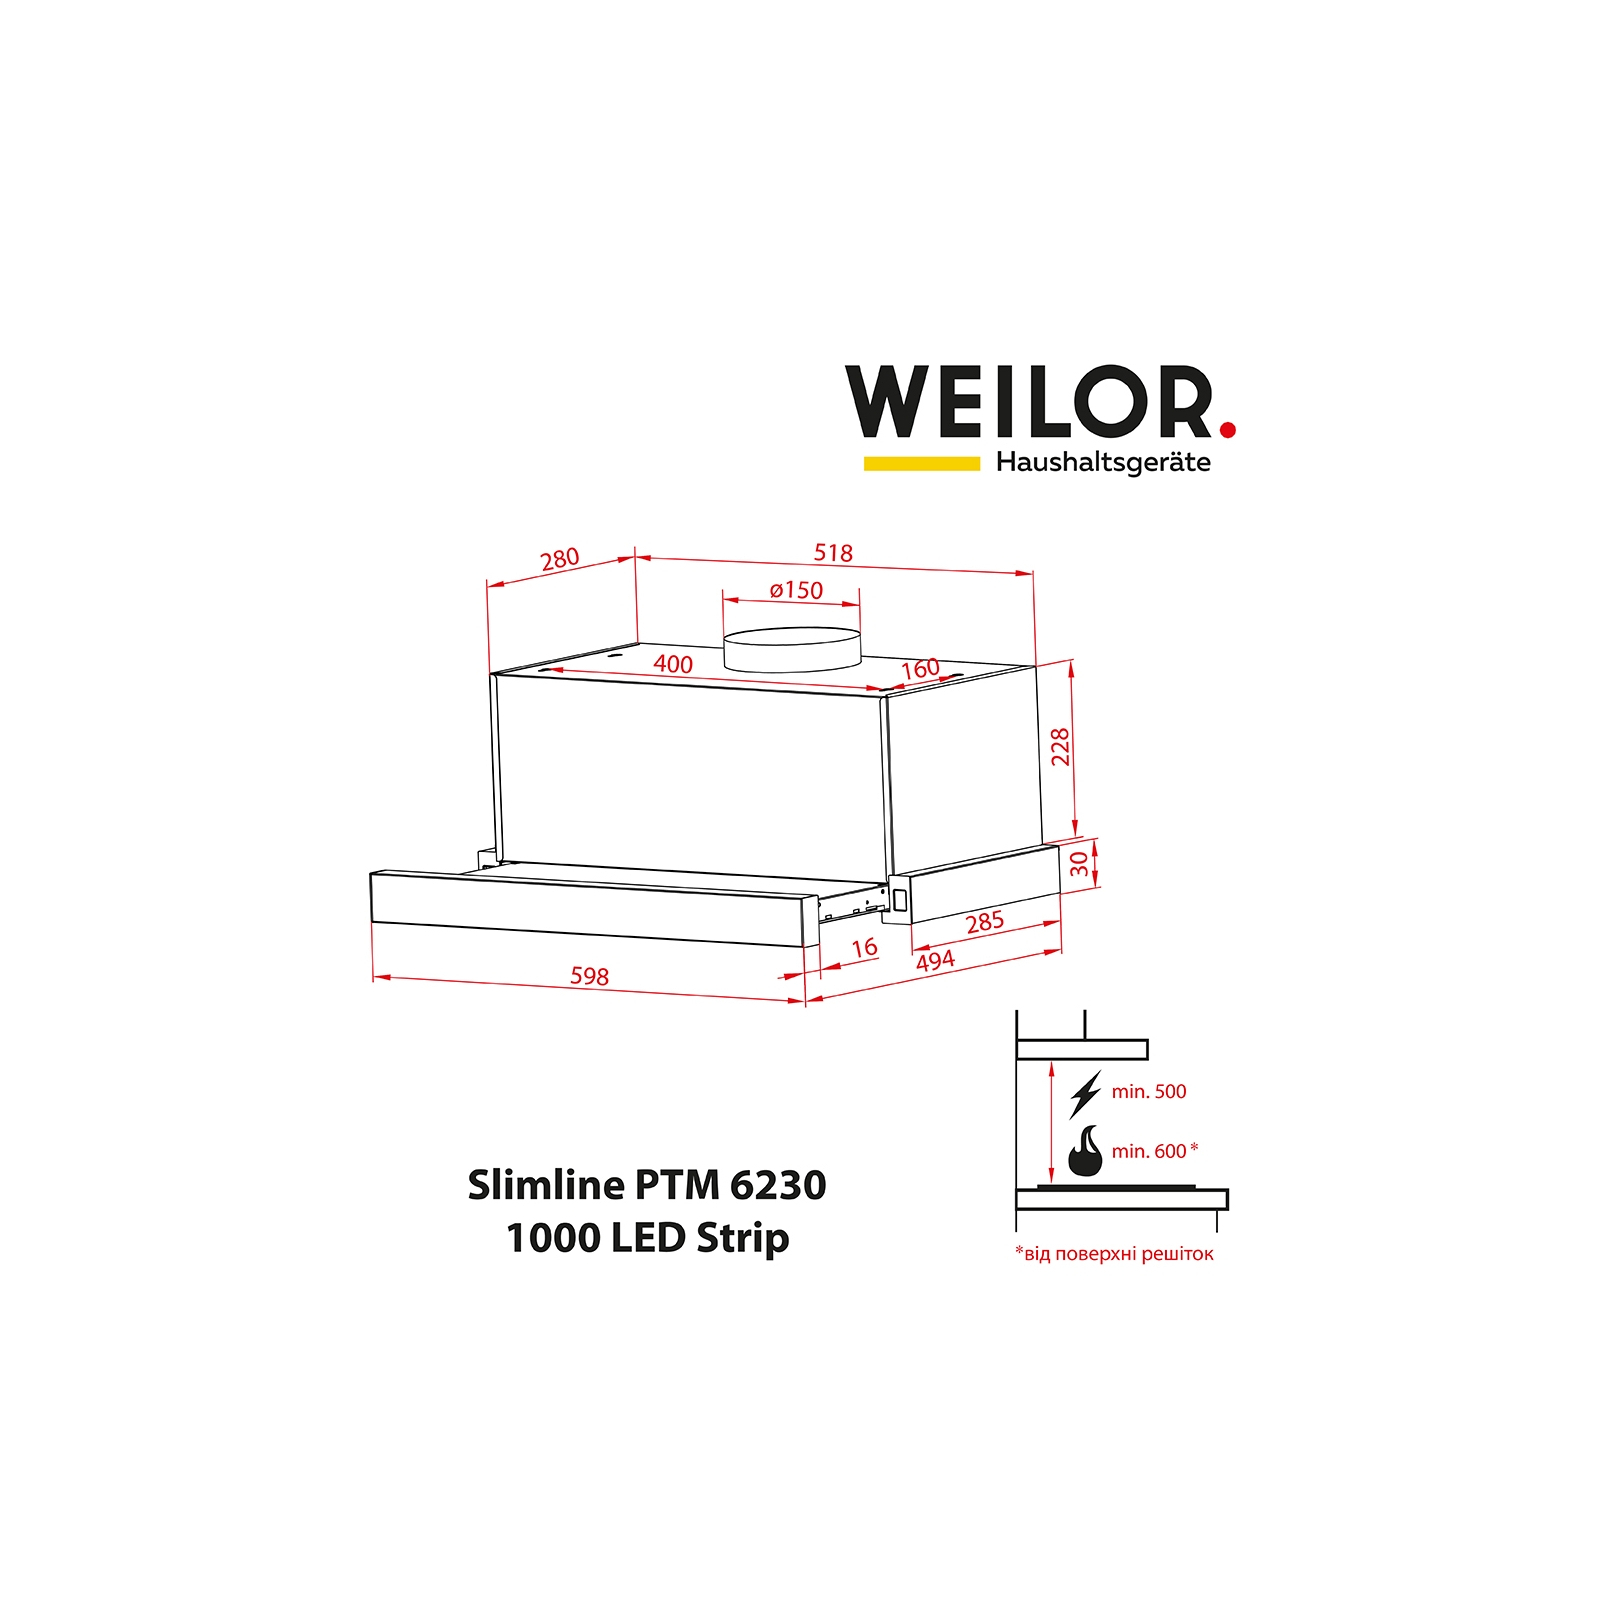 Вытяжка кухонная Weilor Slimline PTM 6230 SS 1000 LED strip изображение 2